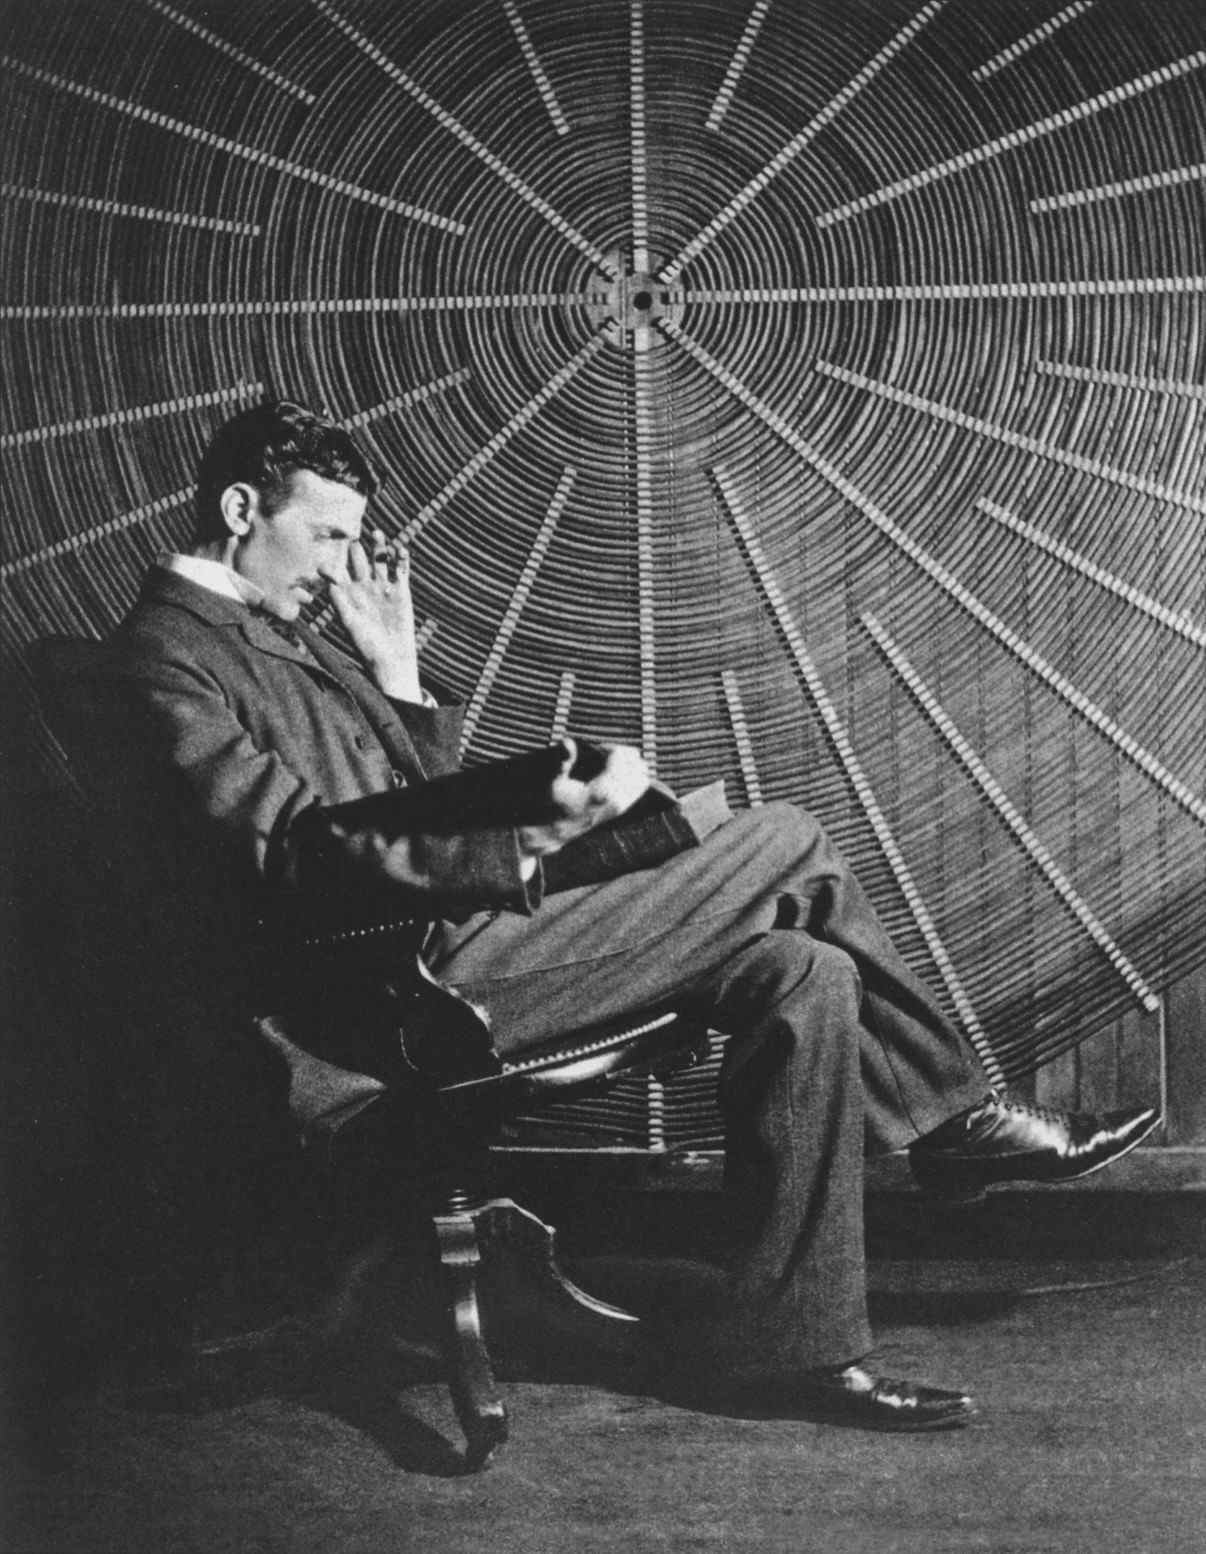 Тесла сидит перед спиральной катушкой, используемой в его экспериментах по беспроводной связи в его лаборатории на Ист-Хьюстон-стрит.